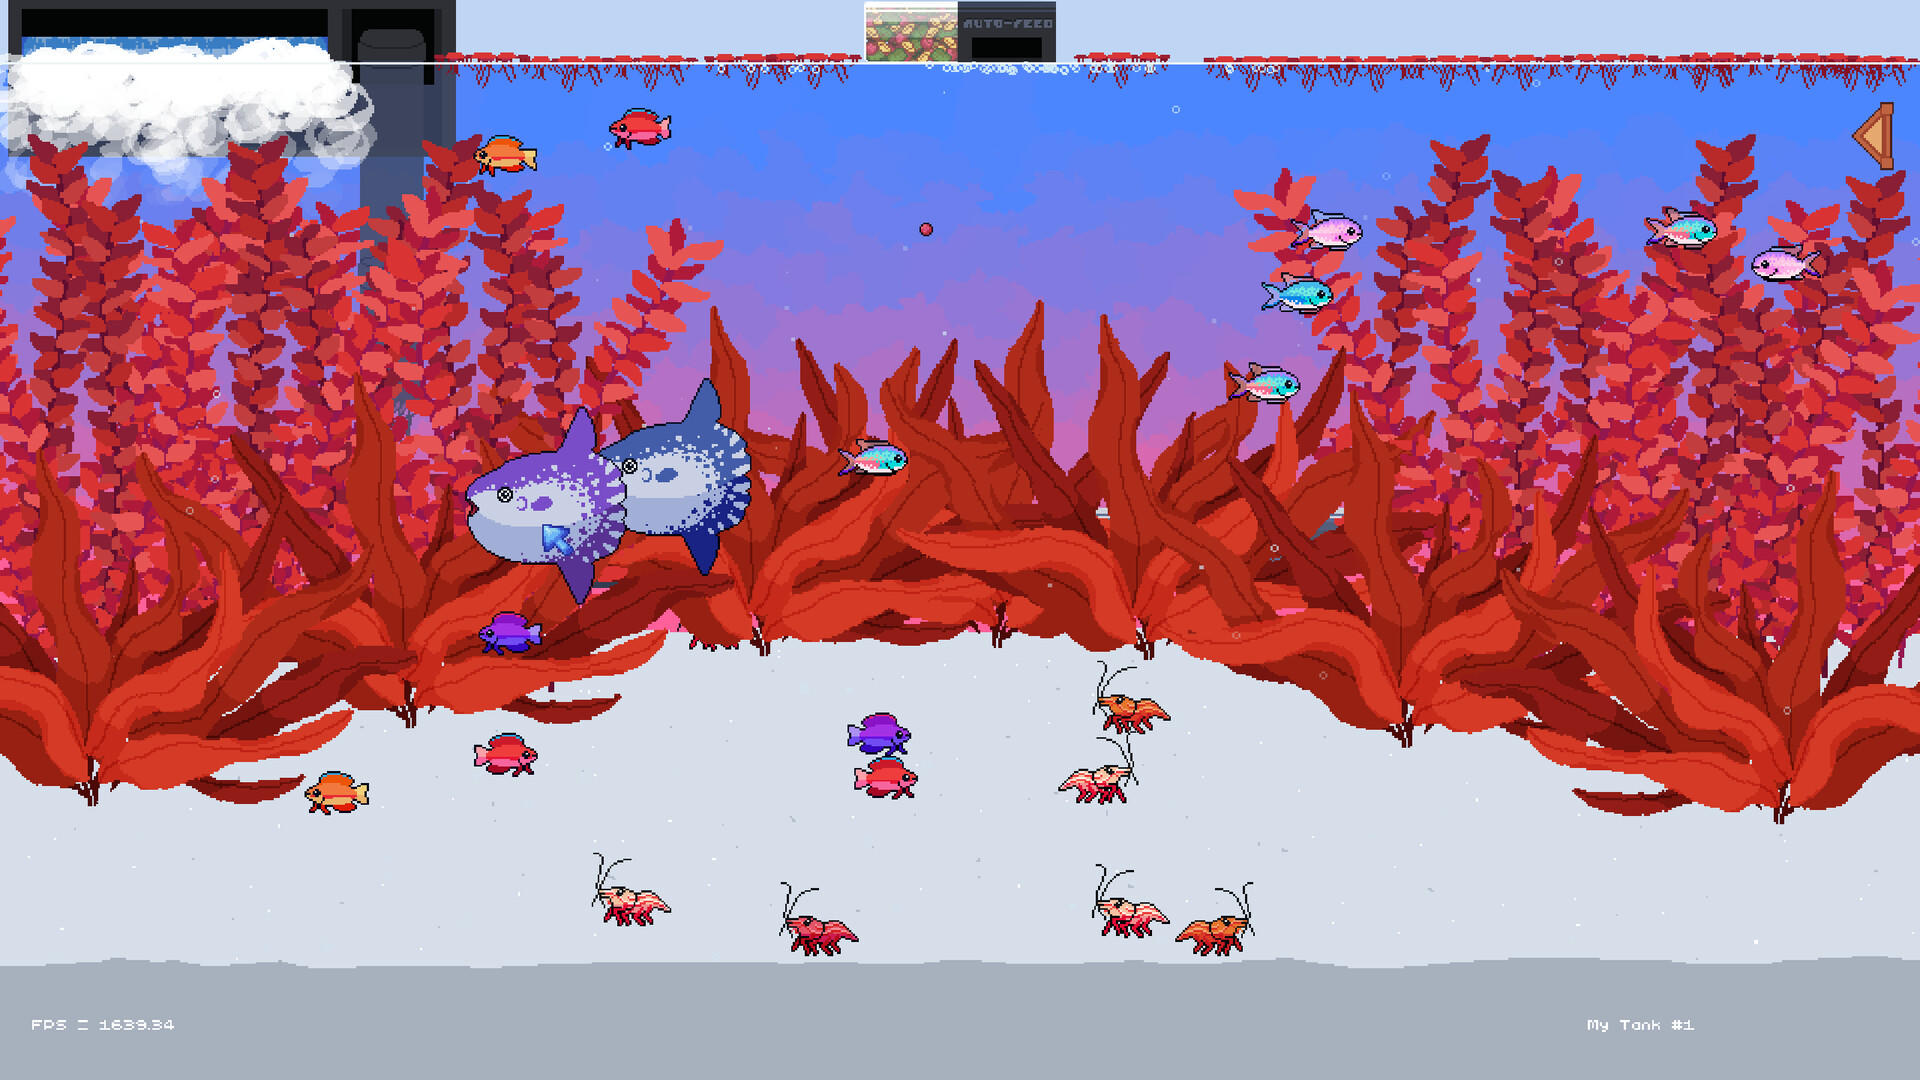 Screenshot of Fishlets